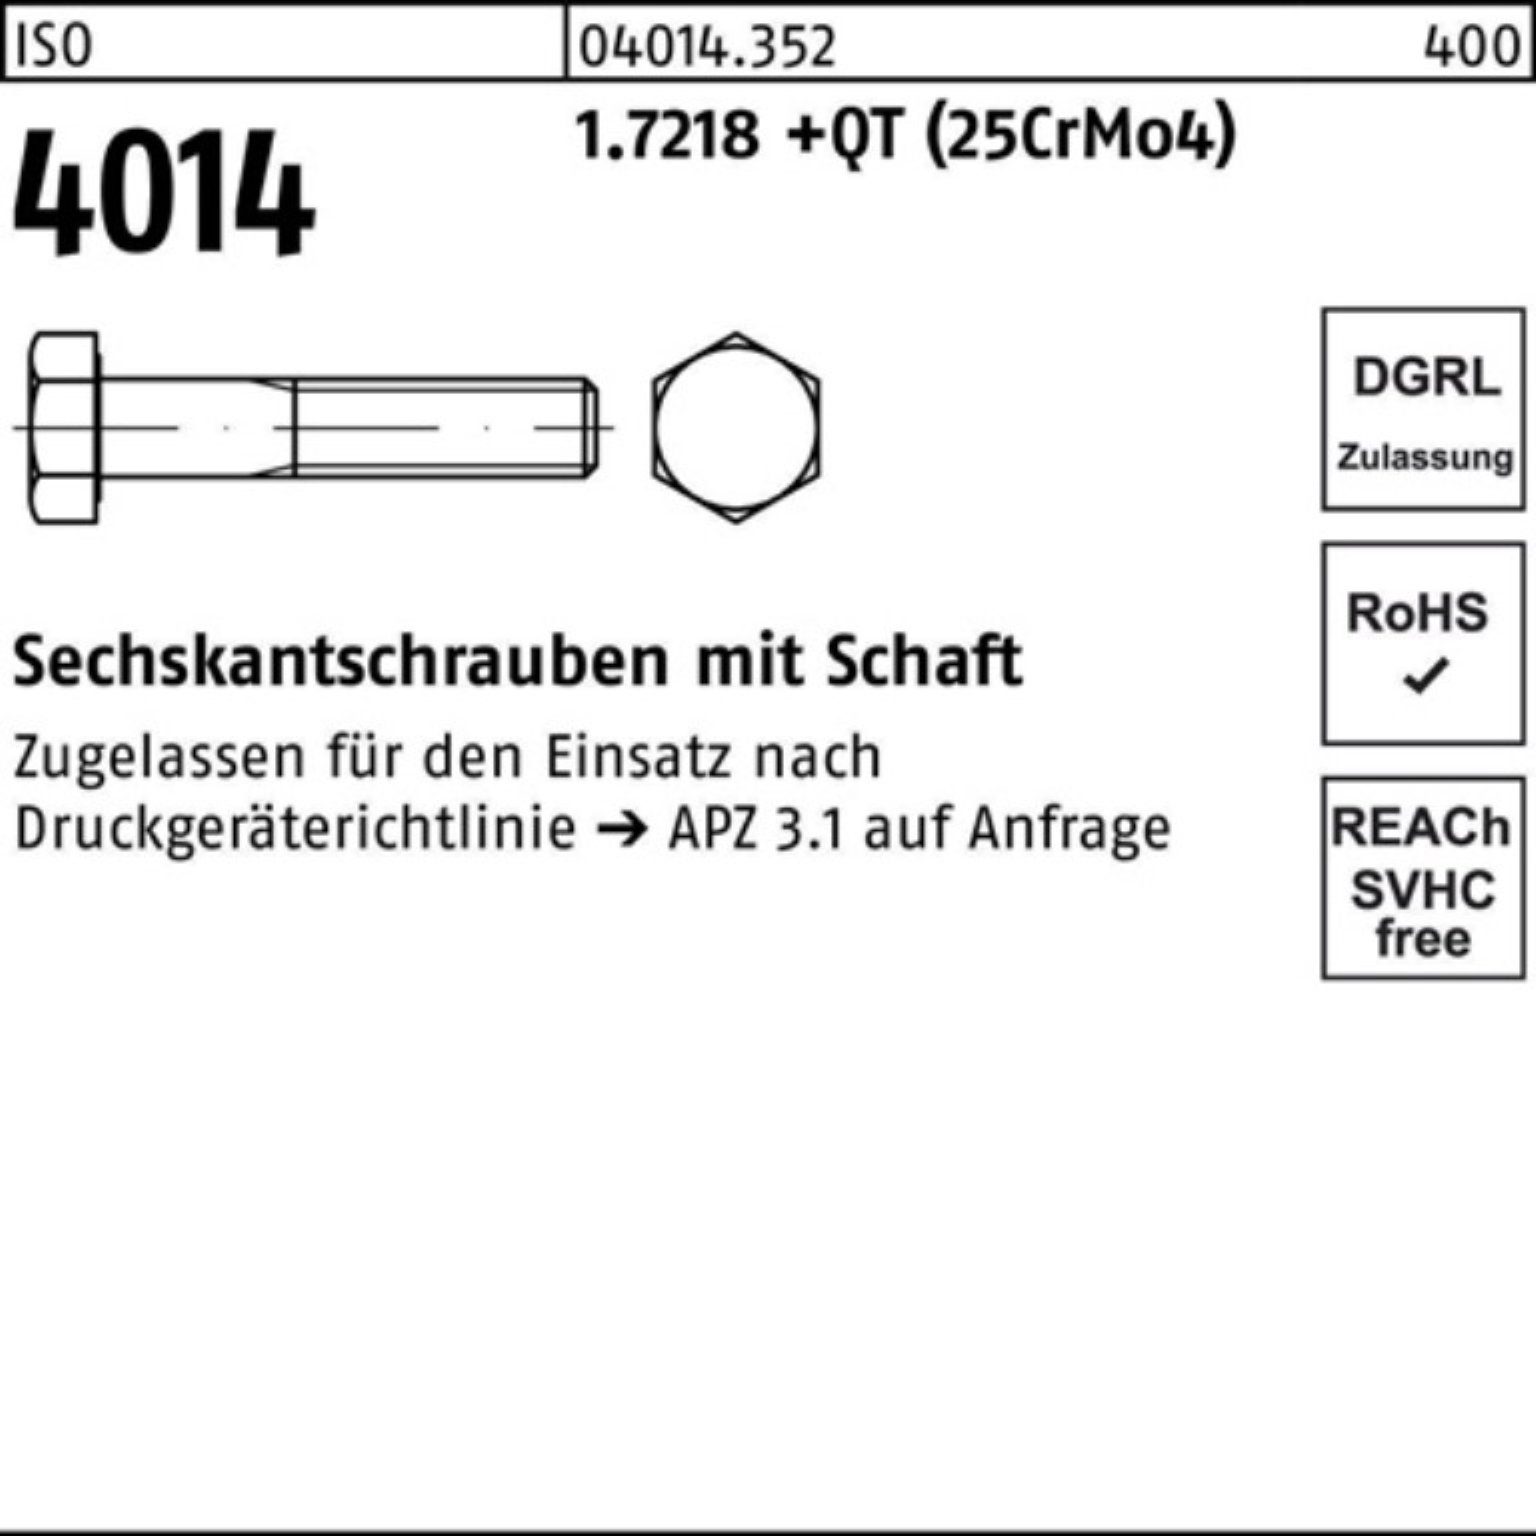 Bufab Sechskantschraube 100er (25Cr Pack 4014 +QT Schaft ISO 200 M20x Sechskantschraube 1.7218